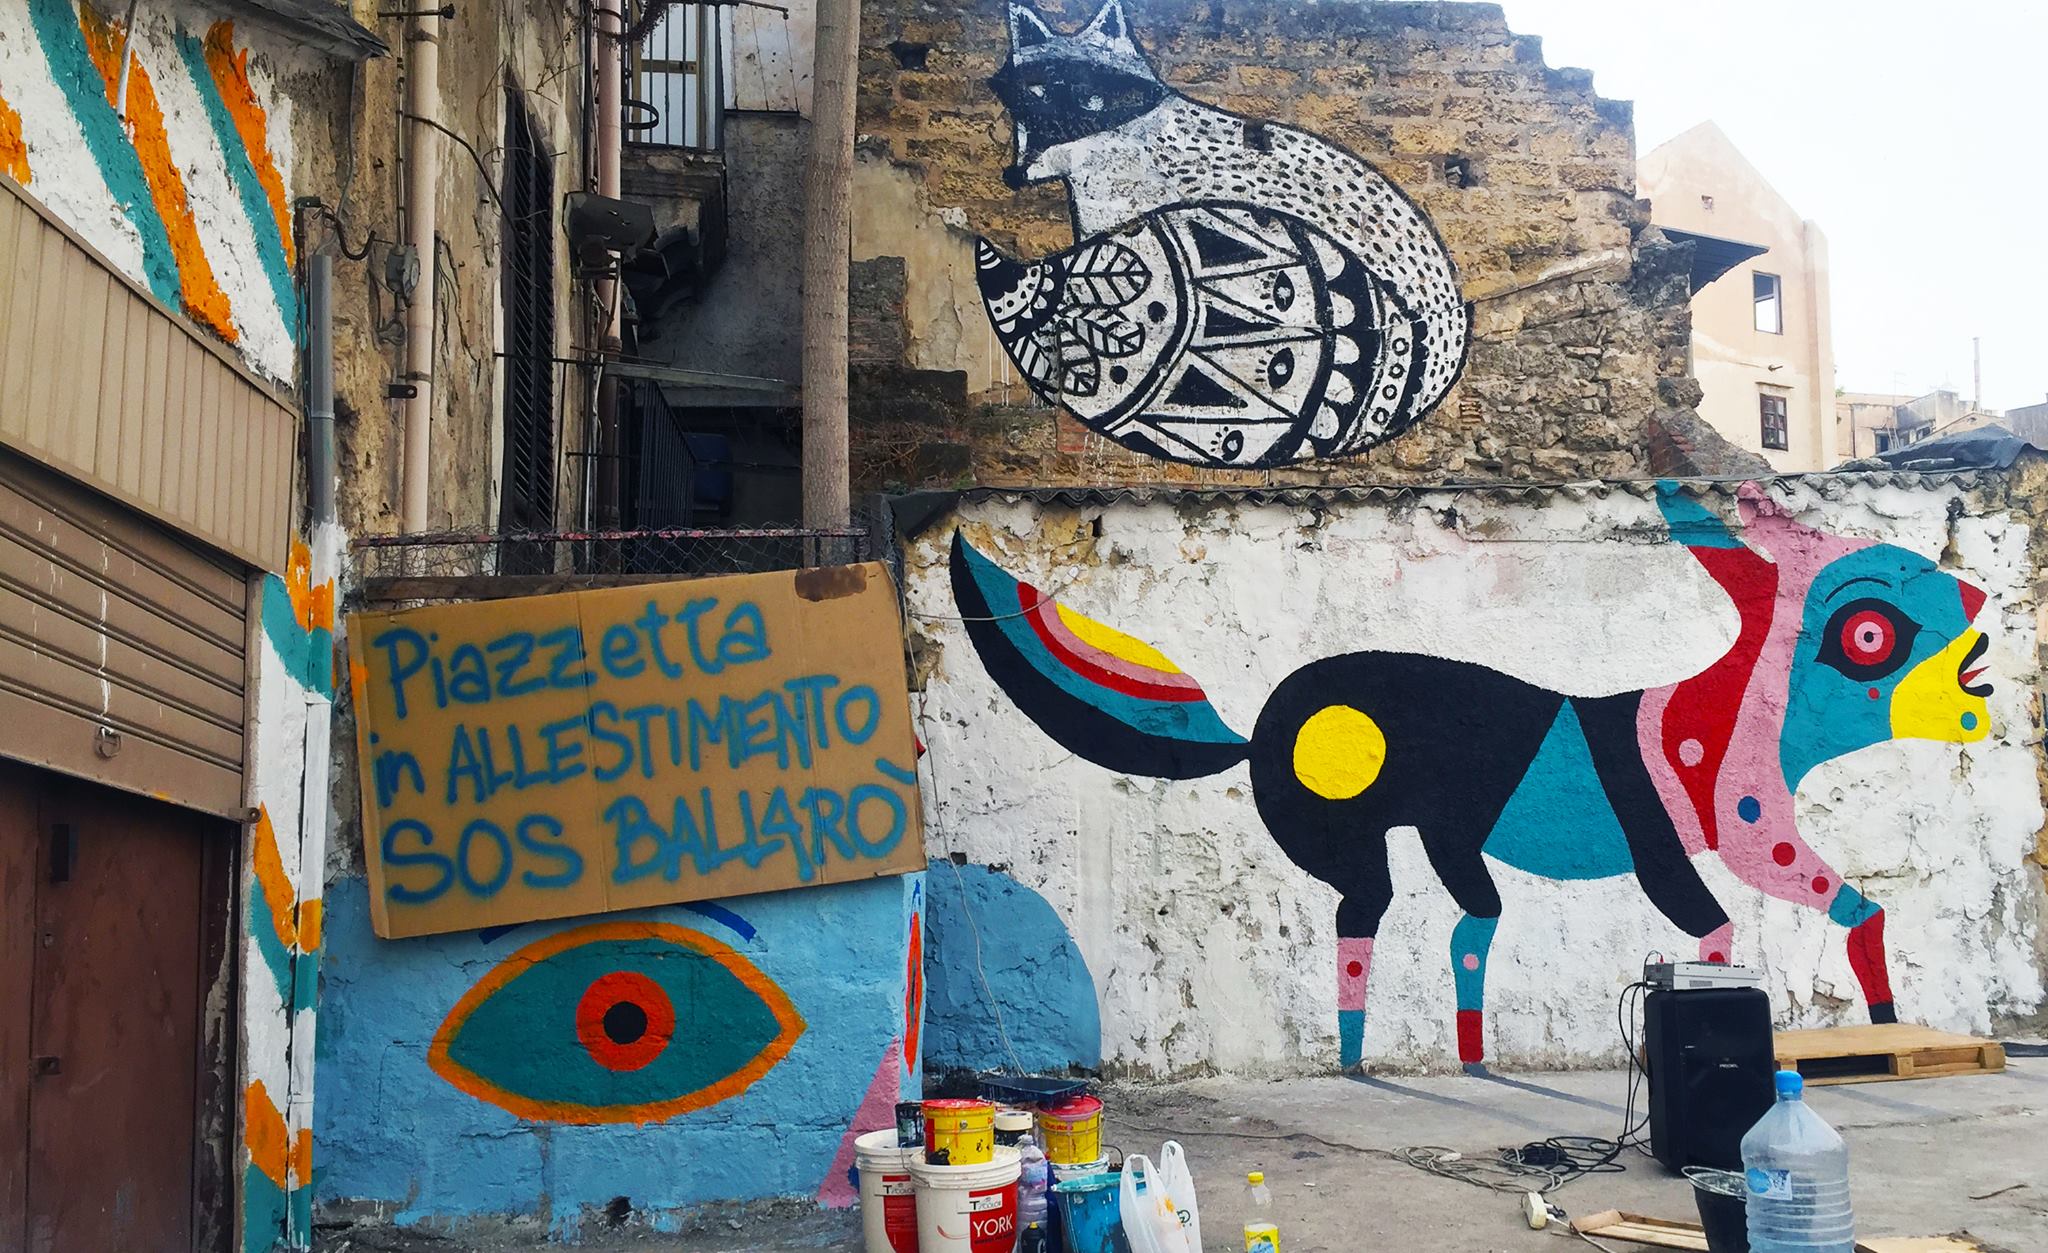 SOS Ballarò, la street art per riqualificare Palermo